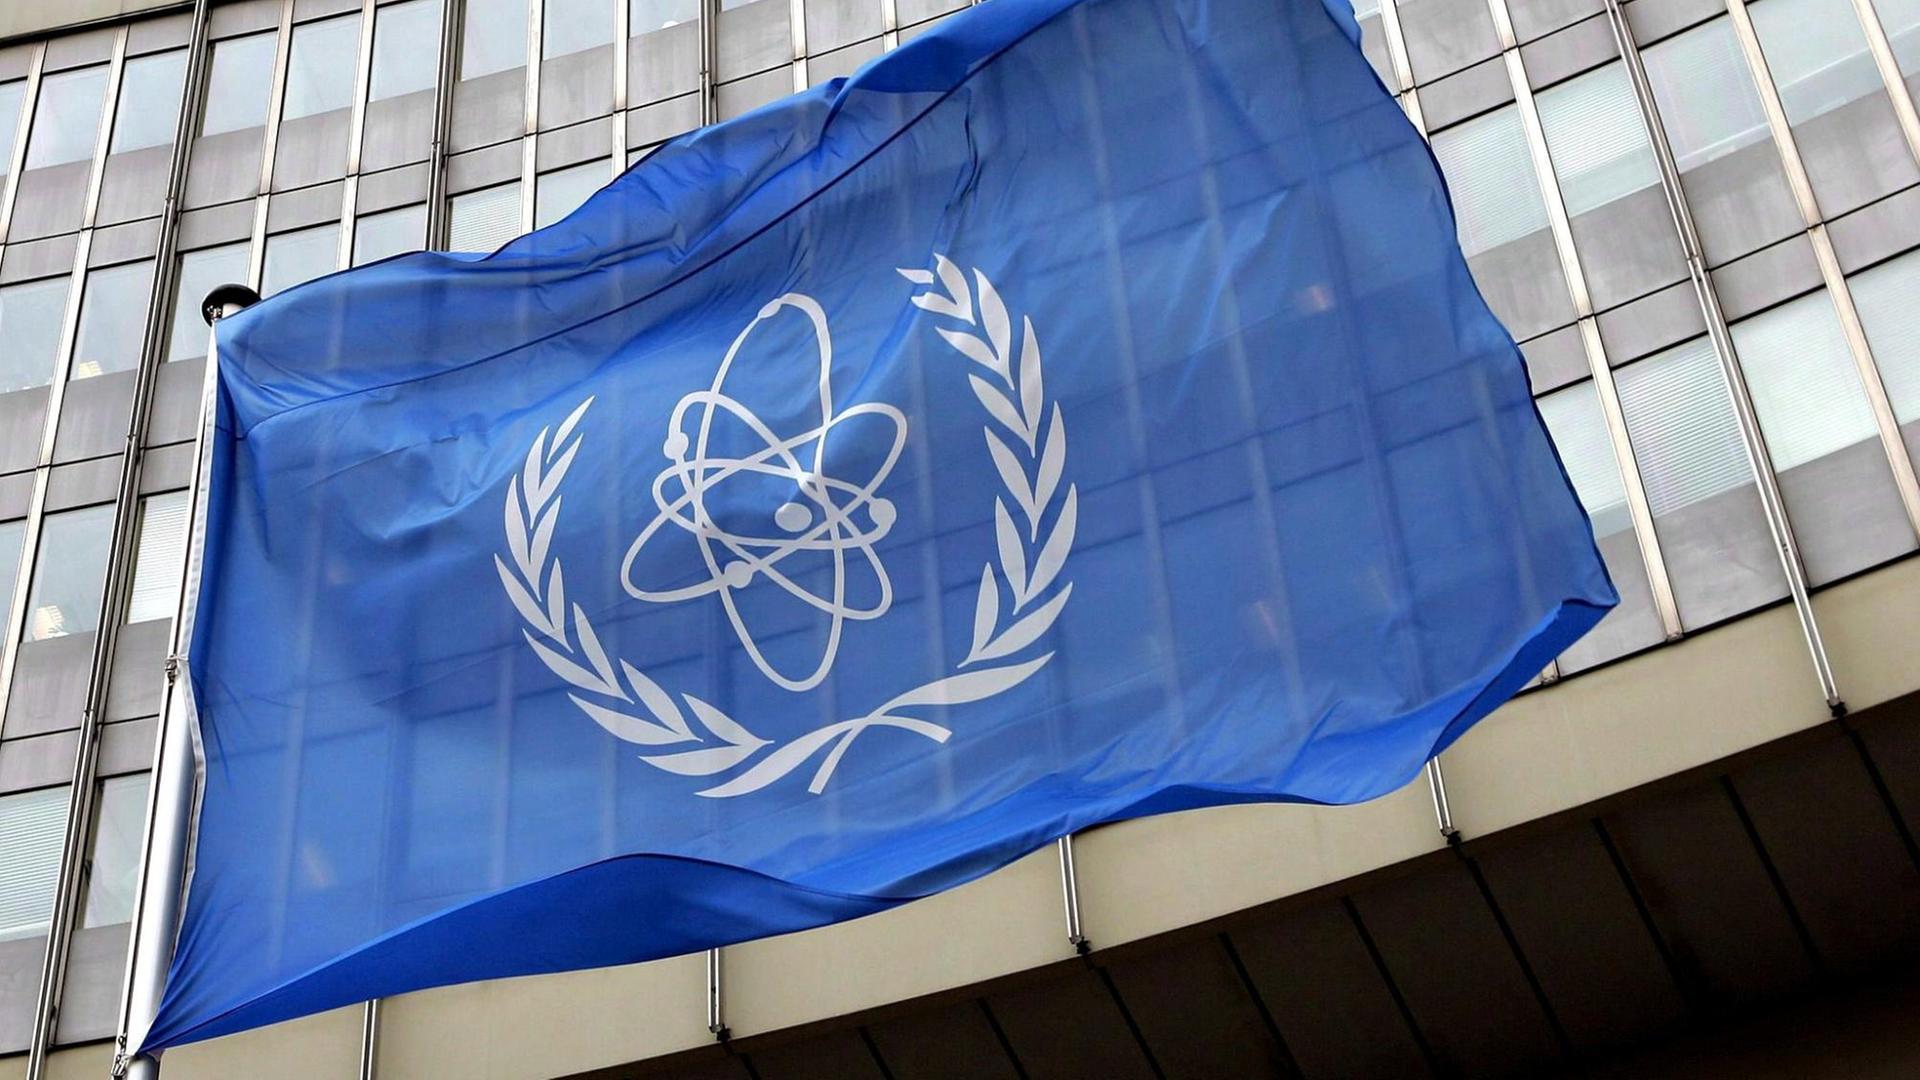 Vor dem Sitz der Internationalen Atomenergiebehörde in Wien weht eine blaue Flagge mit dem IAEA-Logo.